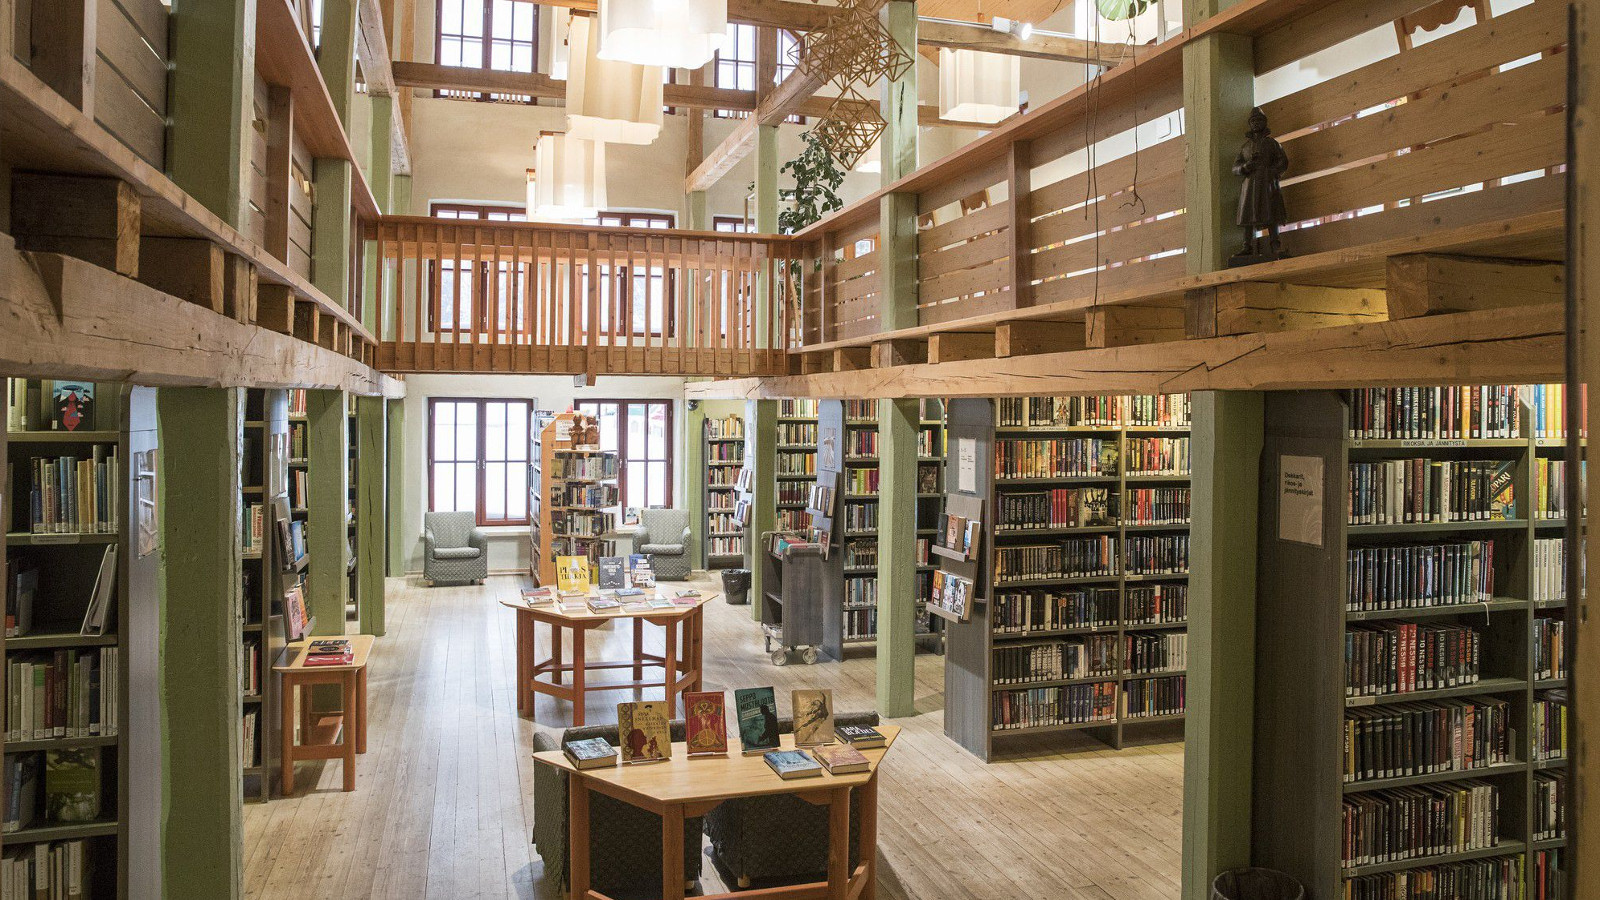 Kuvassa näkyy Tyrnävän kirjaston hyllyjä ja miljöötä, joka on vanhahtavan historiallisen näköinen ja ruskehtavaa väriltään.